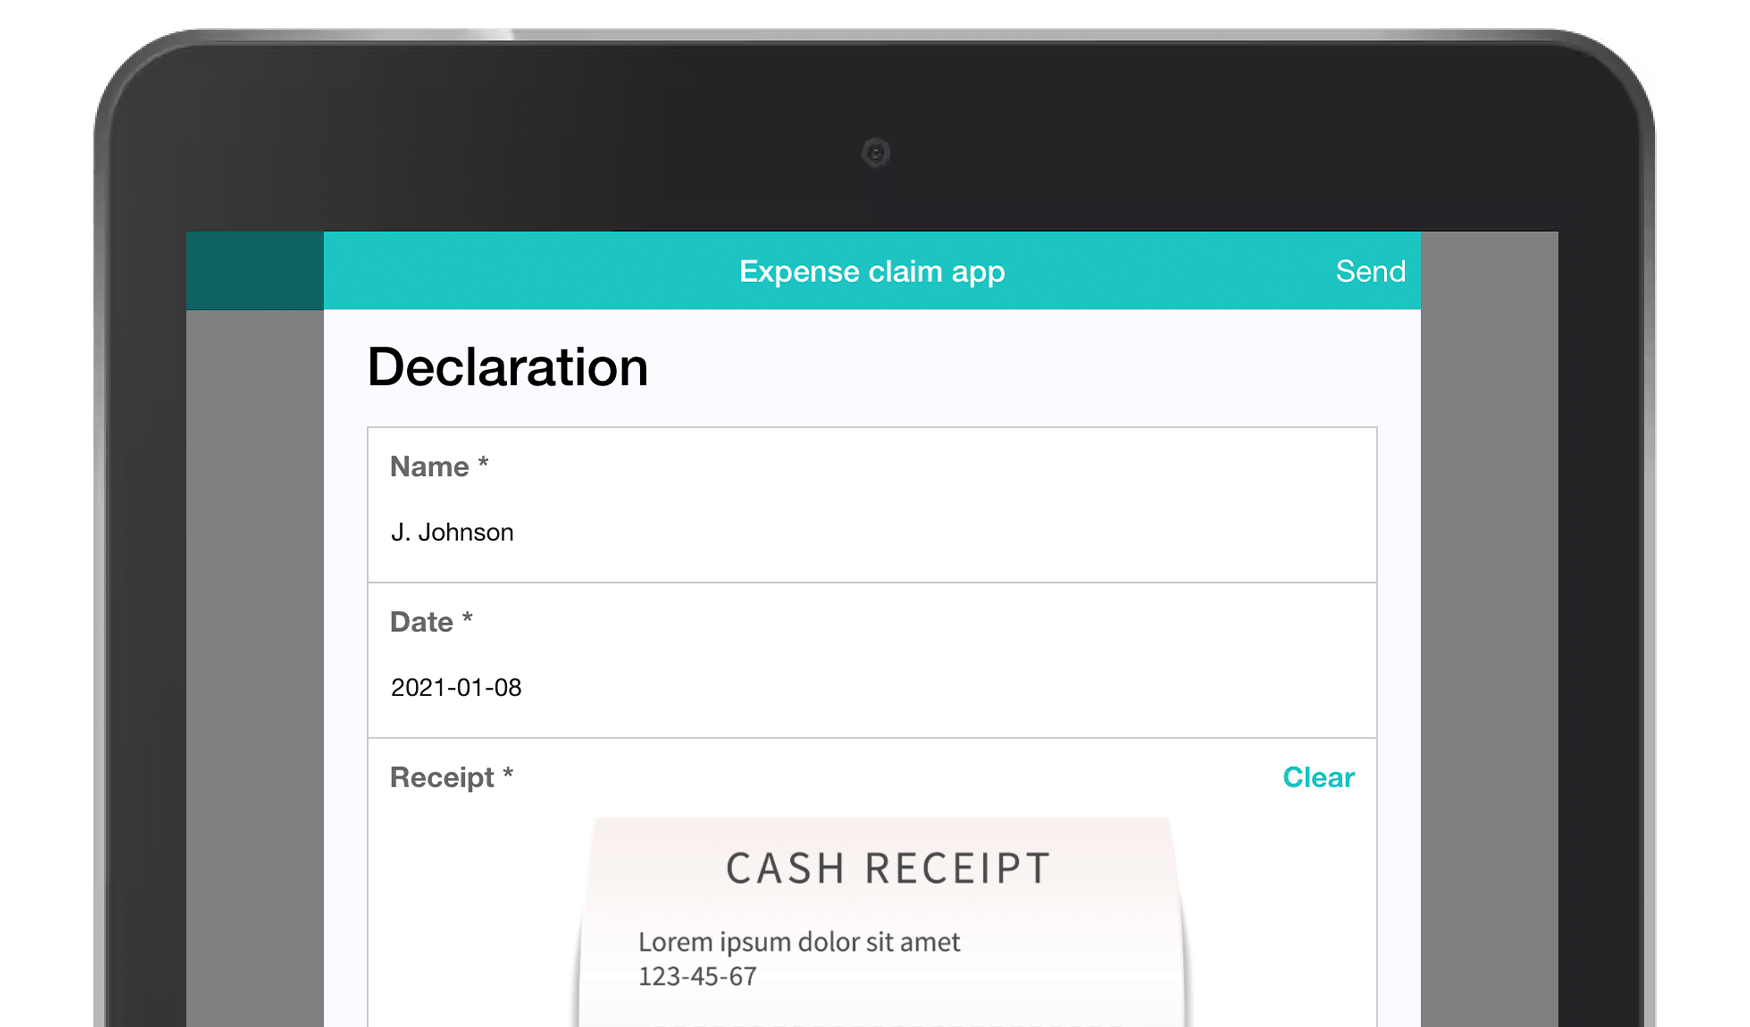 MoreApp Expense claim app